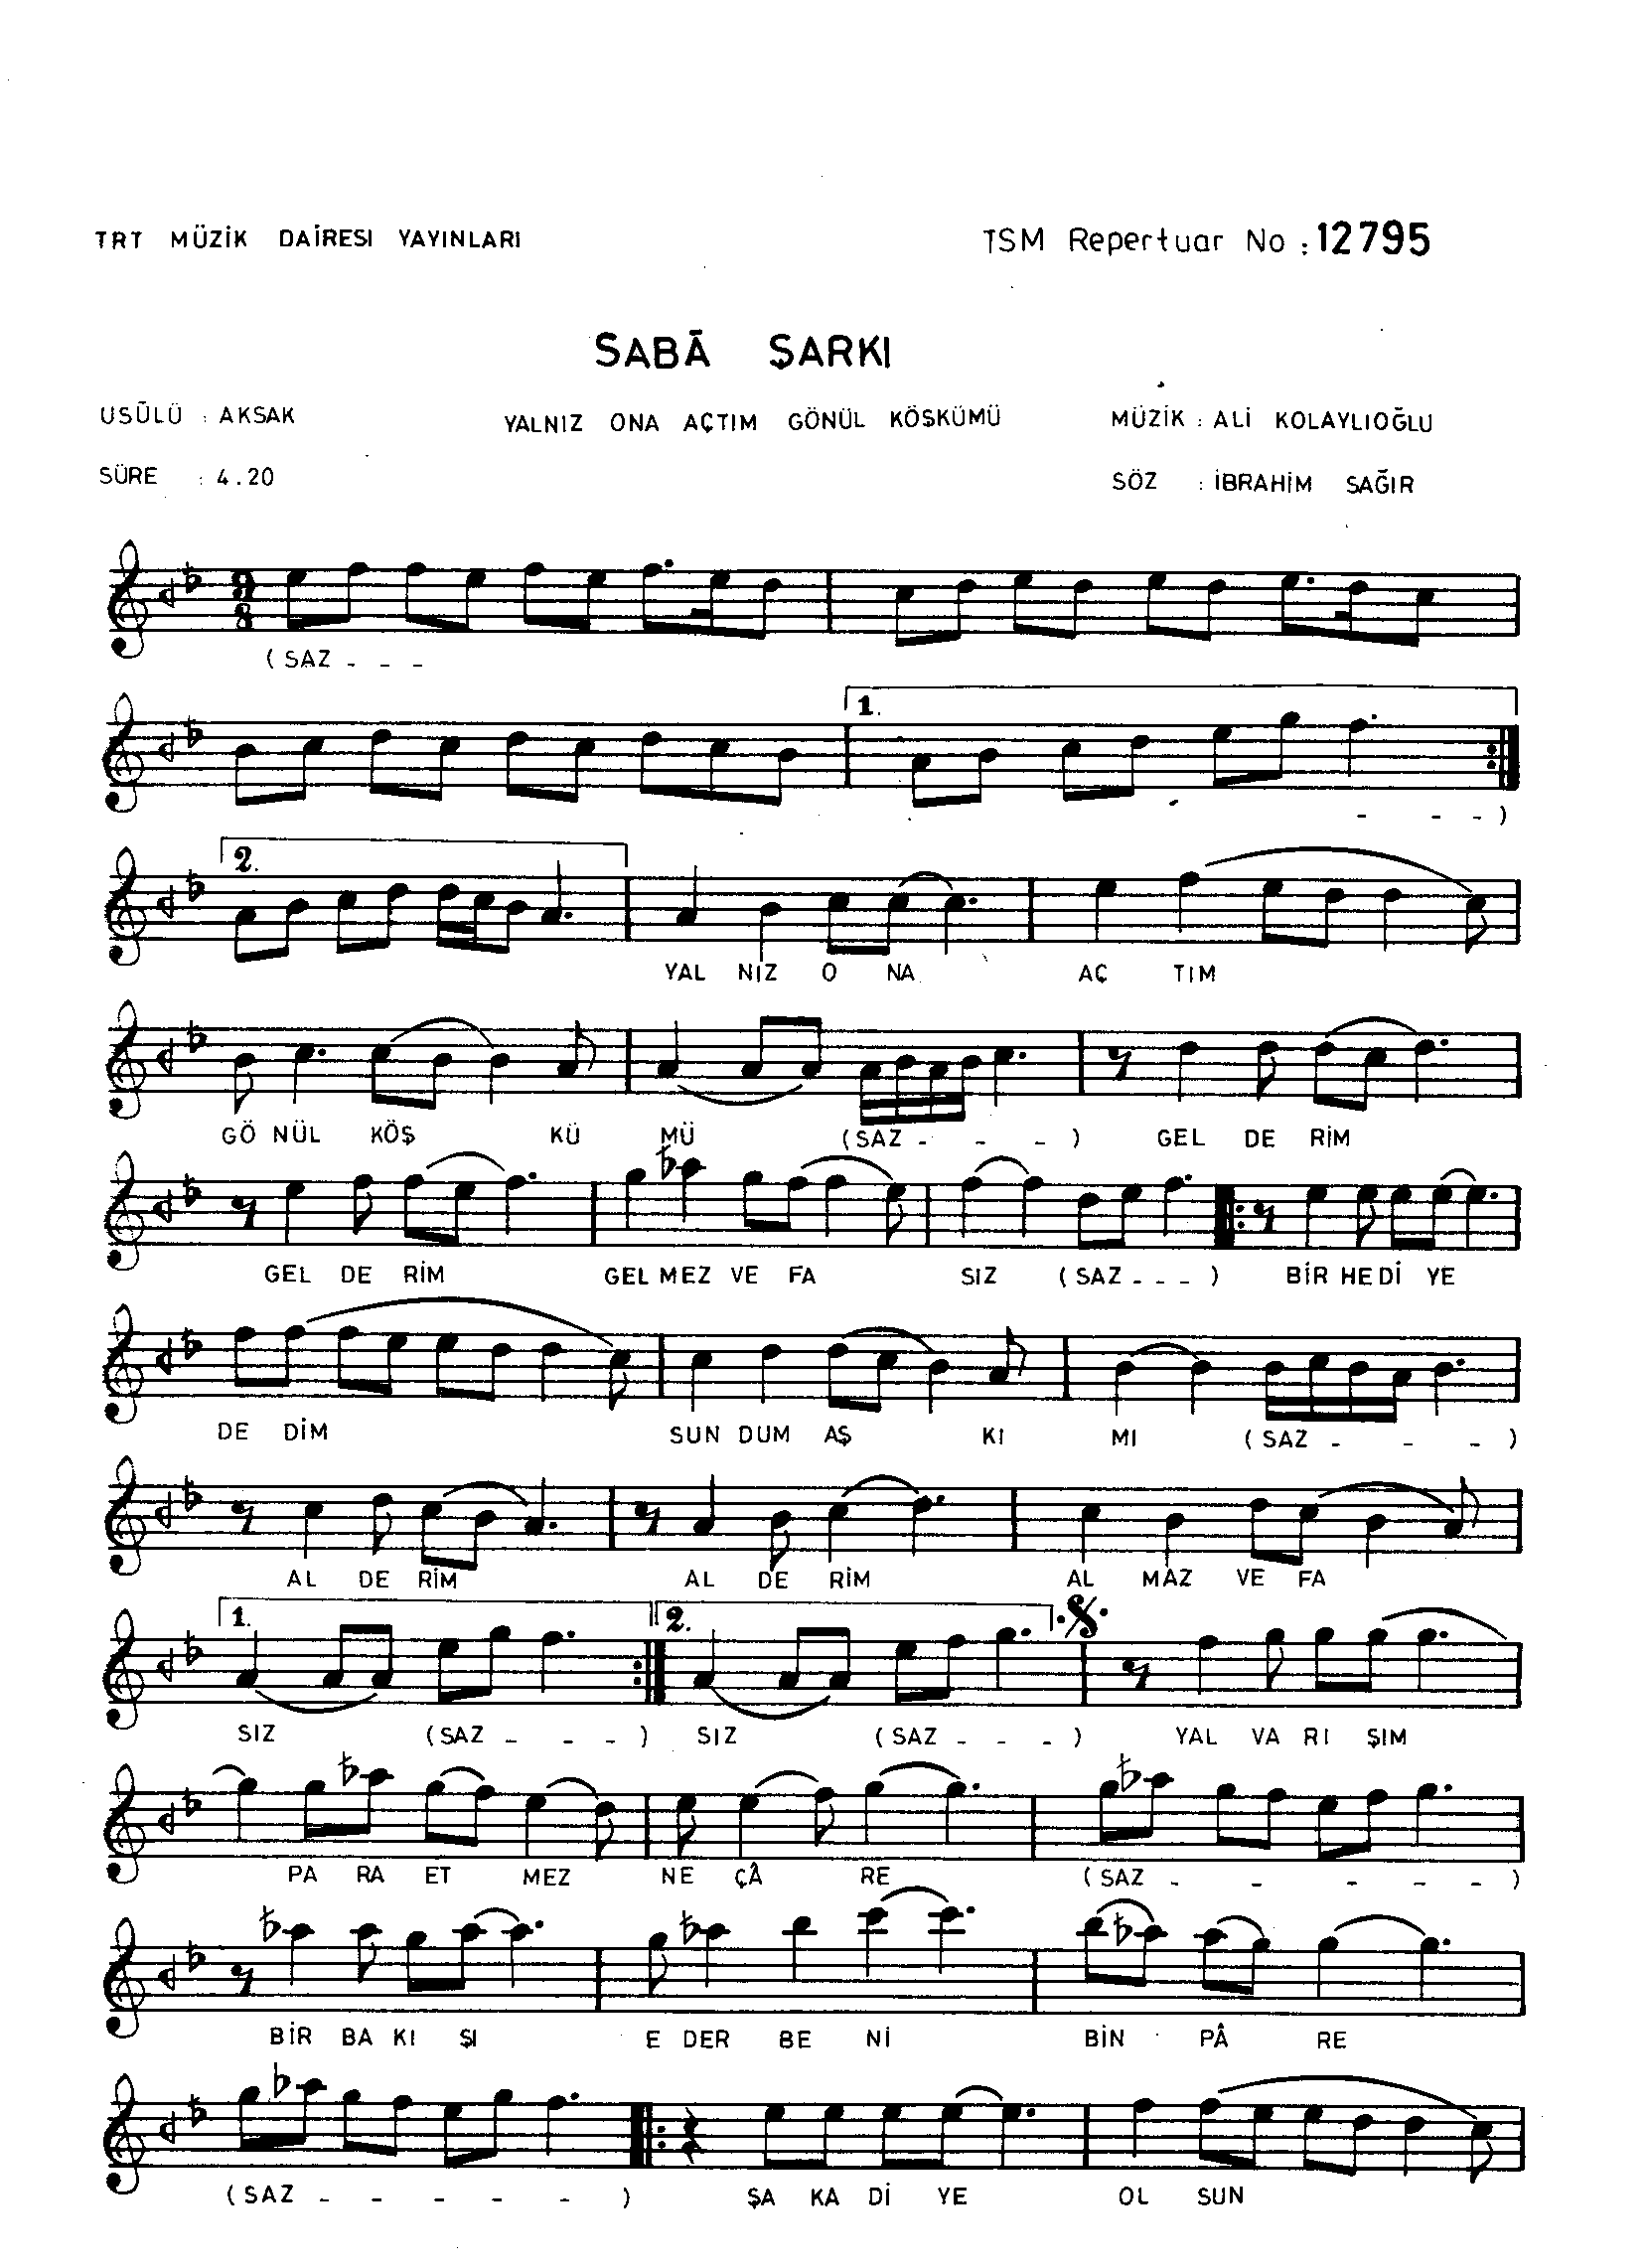 Sabâ - Şarkı - Ali Kolaylıoğlu - Sayfa 1